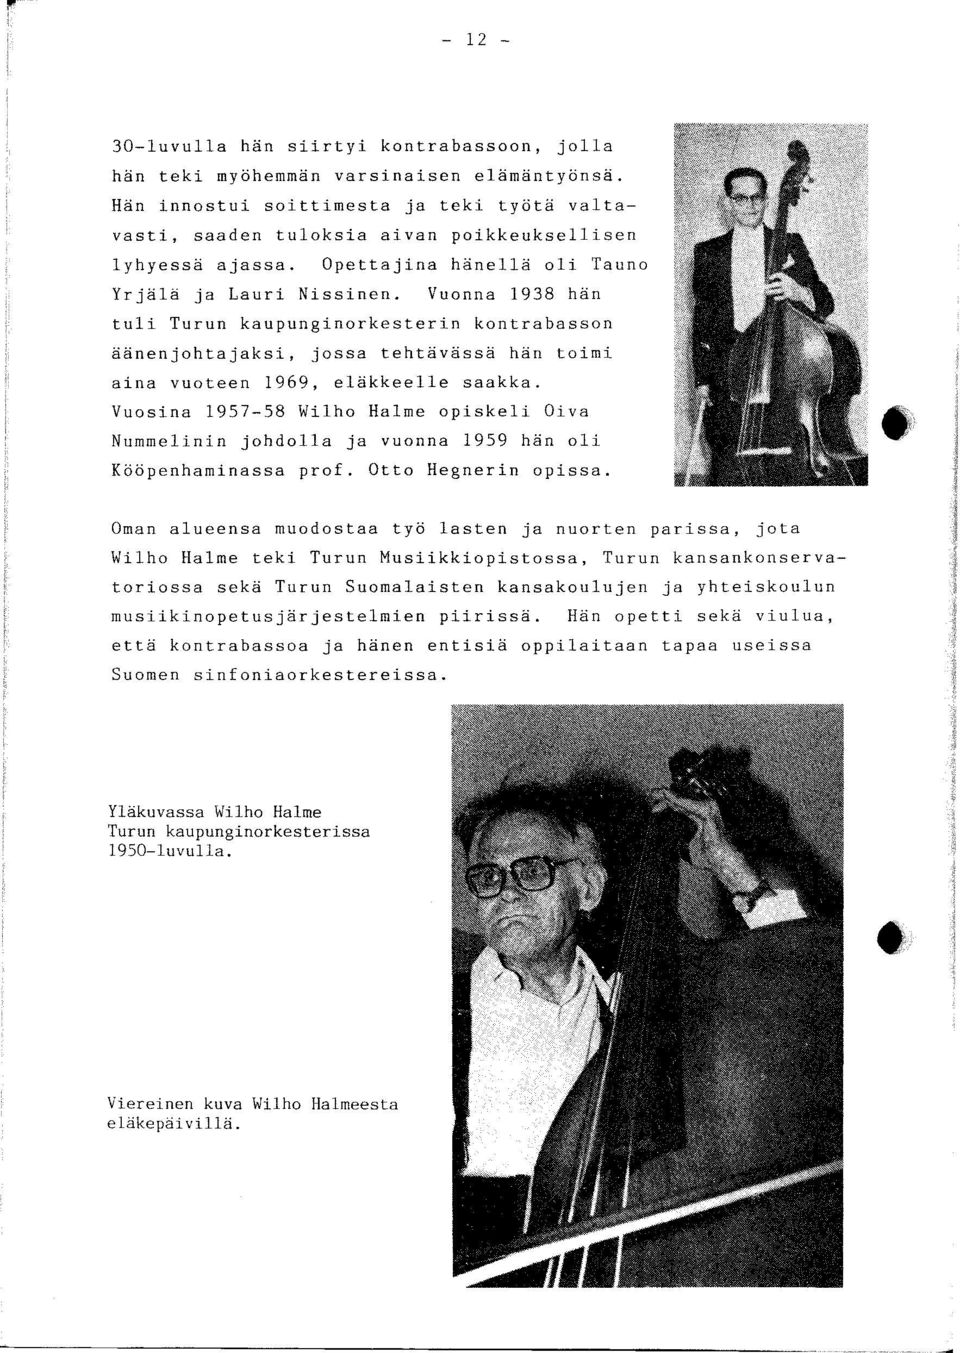 Vuosina 1957-58 Wilho Halme opiskeli Oiva Nummelinin johdolla ja vuonna 1959 hän oli Kööpenhaminassa prof. Otto Hegnerin opissa.